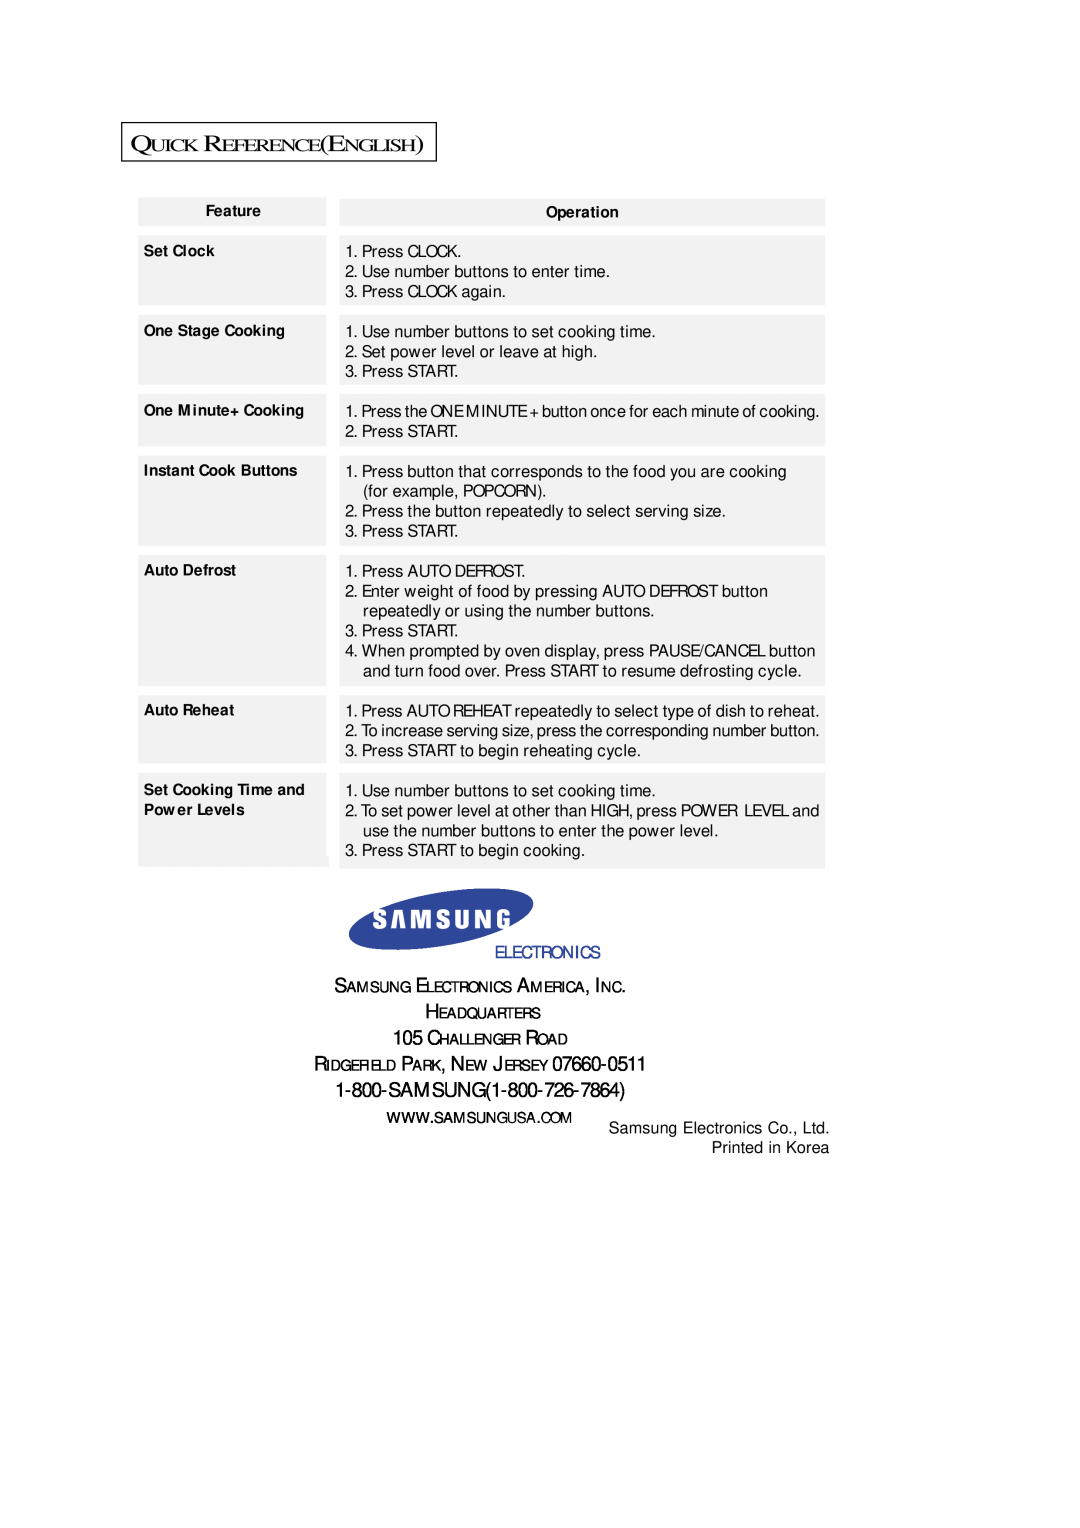 Samsung SRH1230ZG owner manual SAMSUNG1-800-726-7864, Electronics 